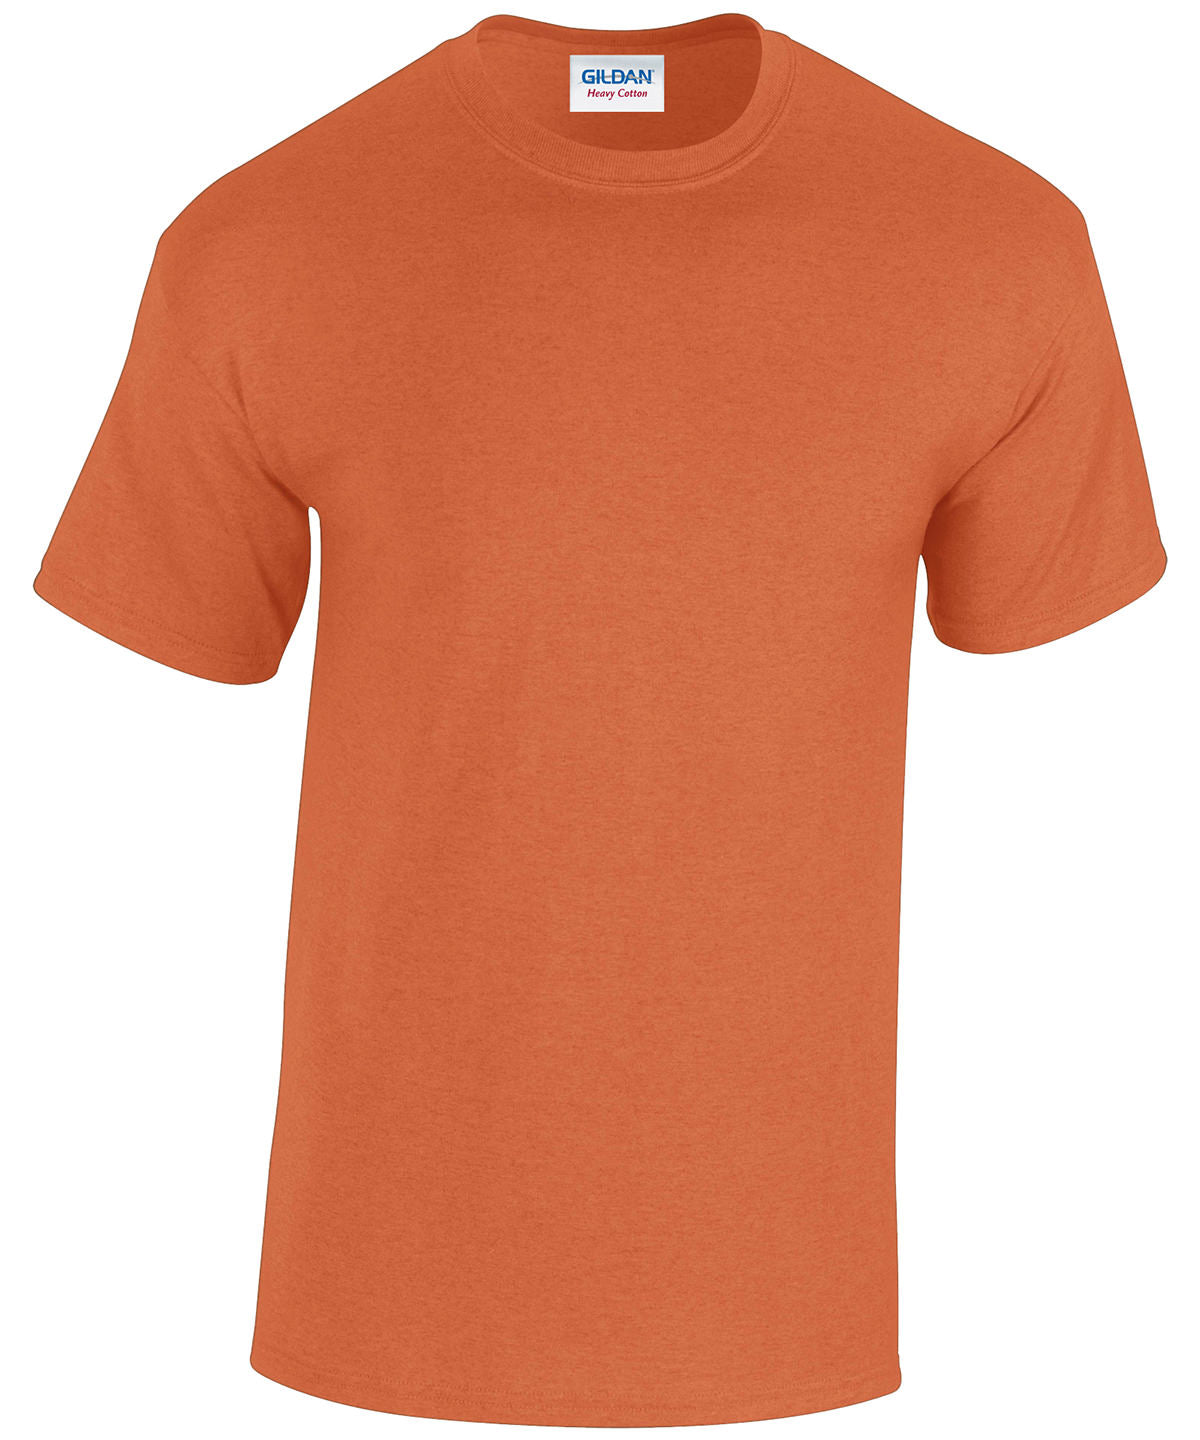 Gildan Heavy Cotton adult t-shirt Antique Orange